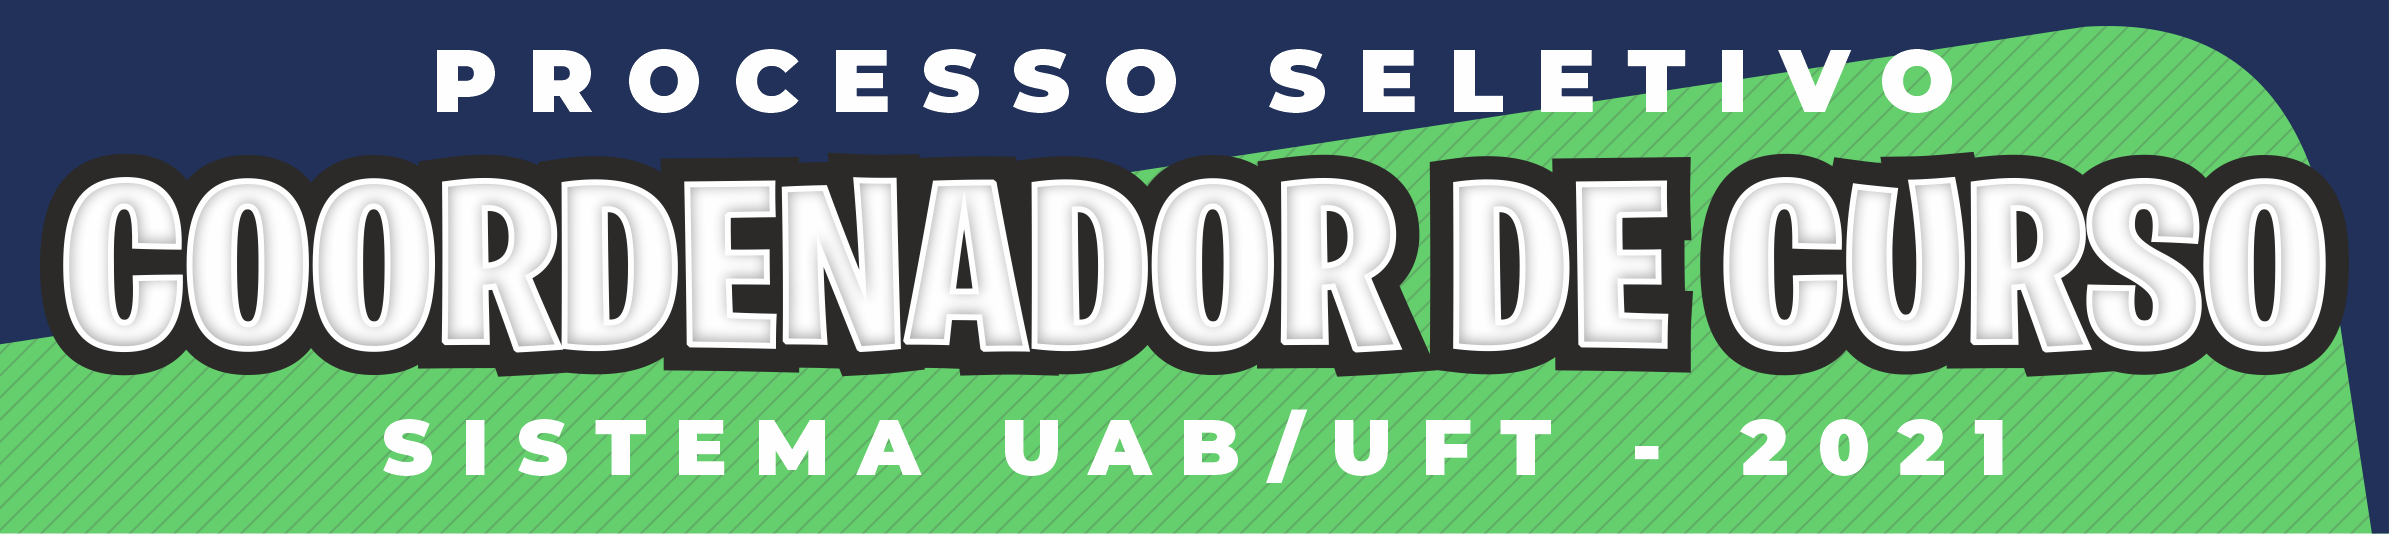 PROCESSO SELETIVO PARA COORDENADORES DE CURSOS UAB - 2021